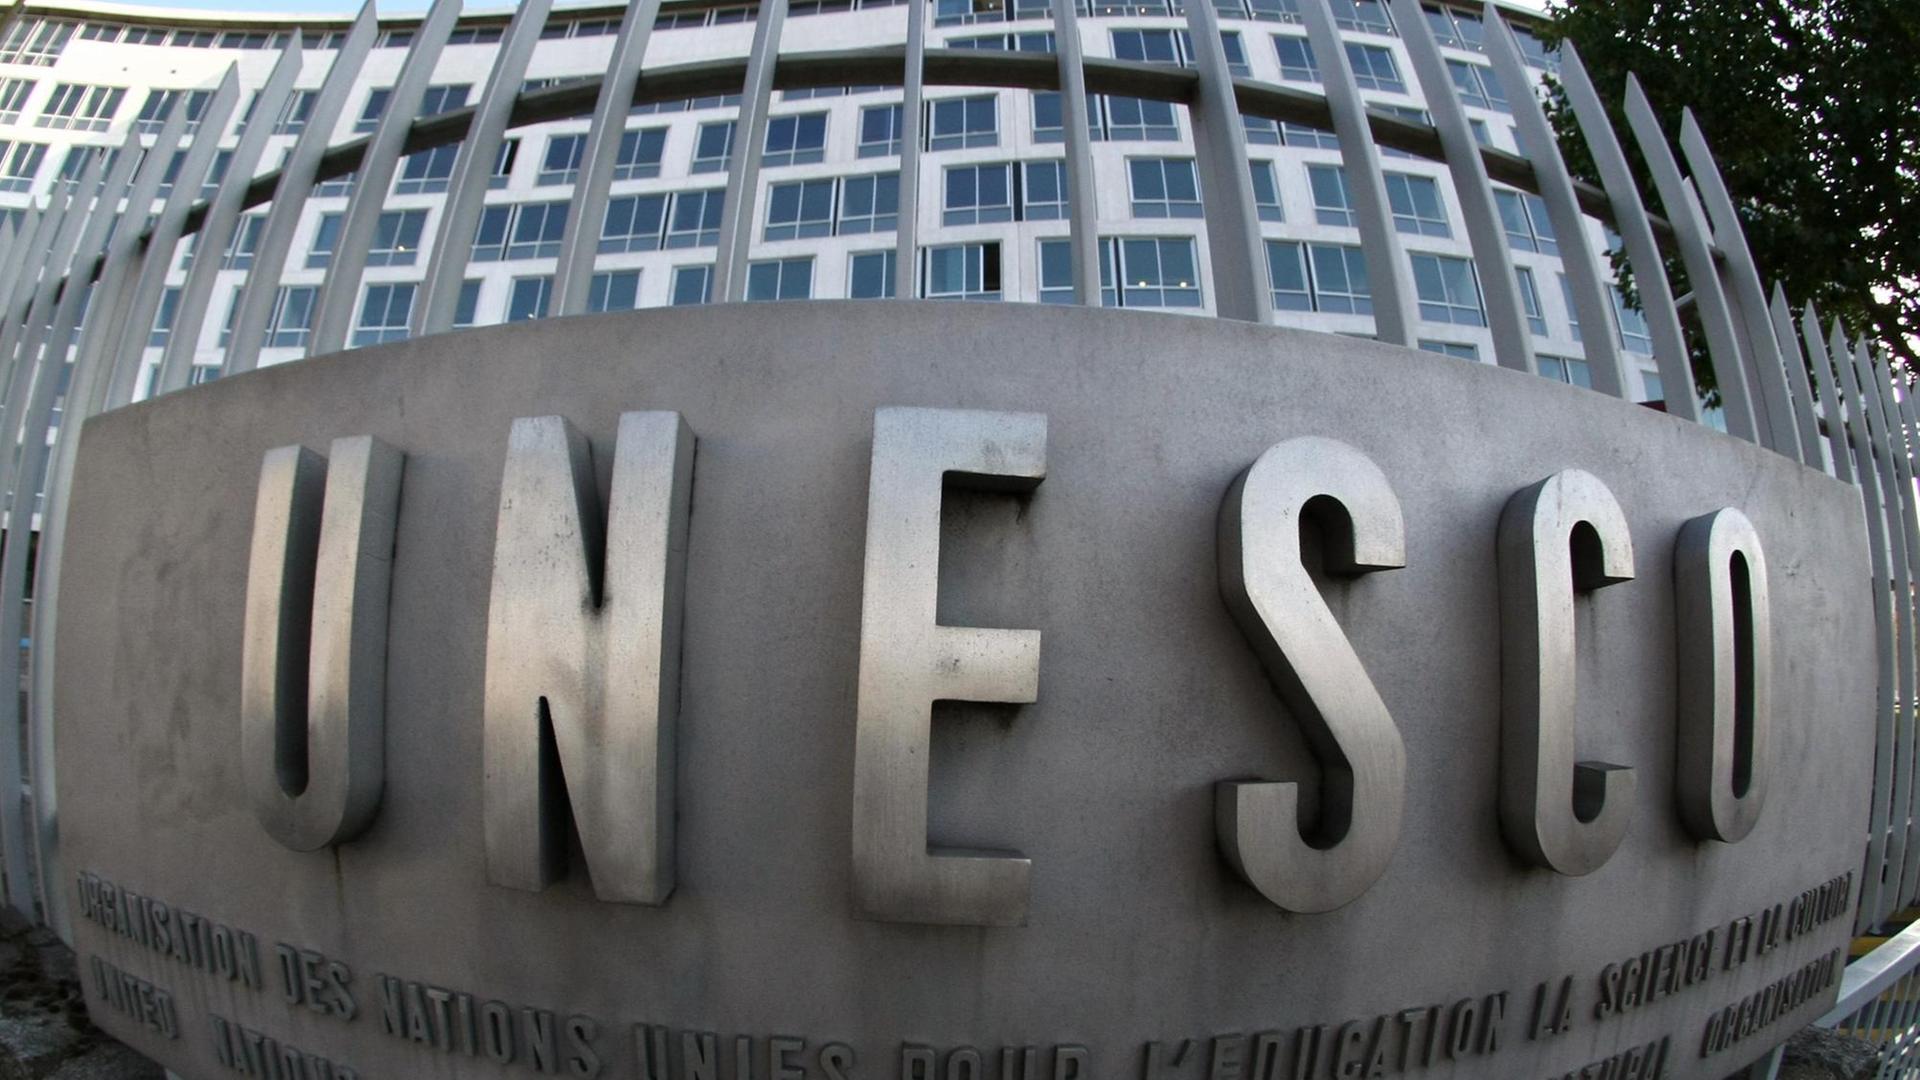 UNESCO-Logo am Hauptquartier in Paris.